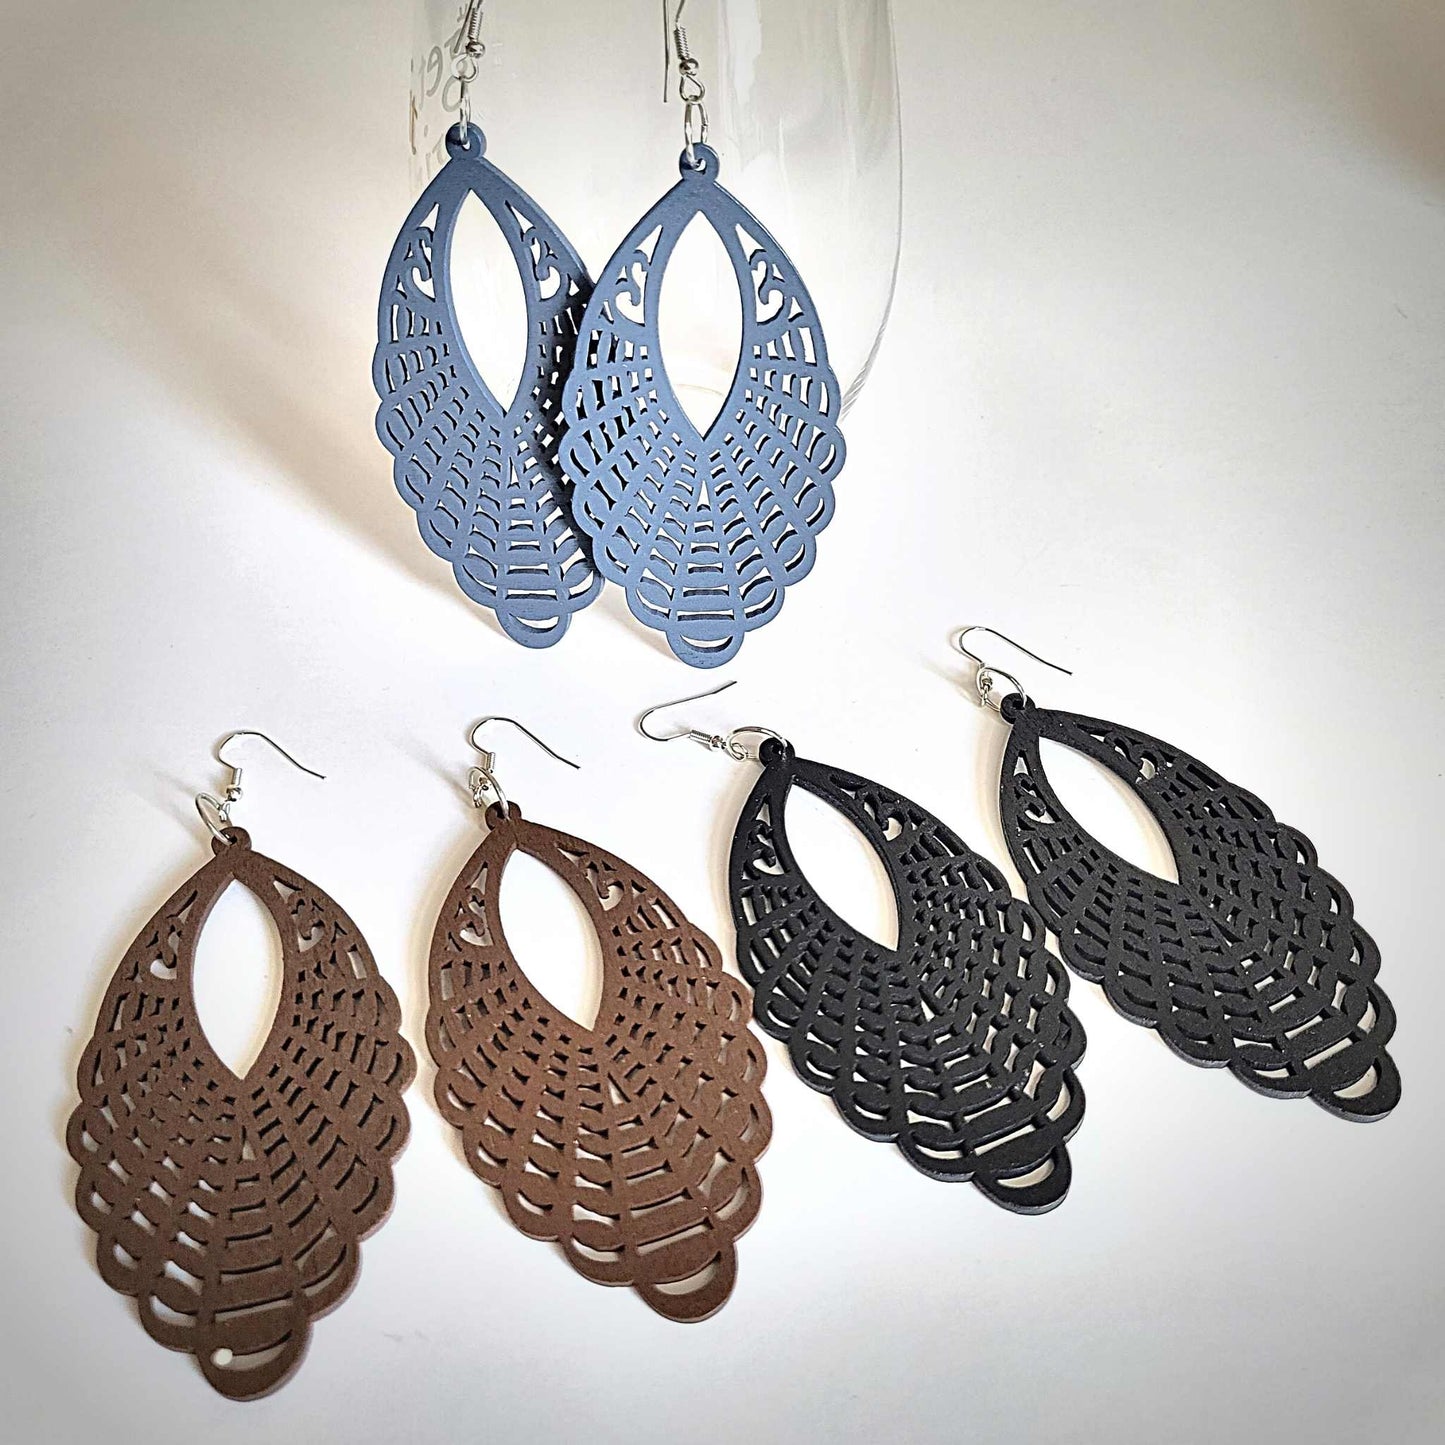 Earrings Earrings - Carved Wood Hook Earrings - Blue, Black, and Brown